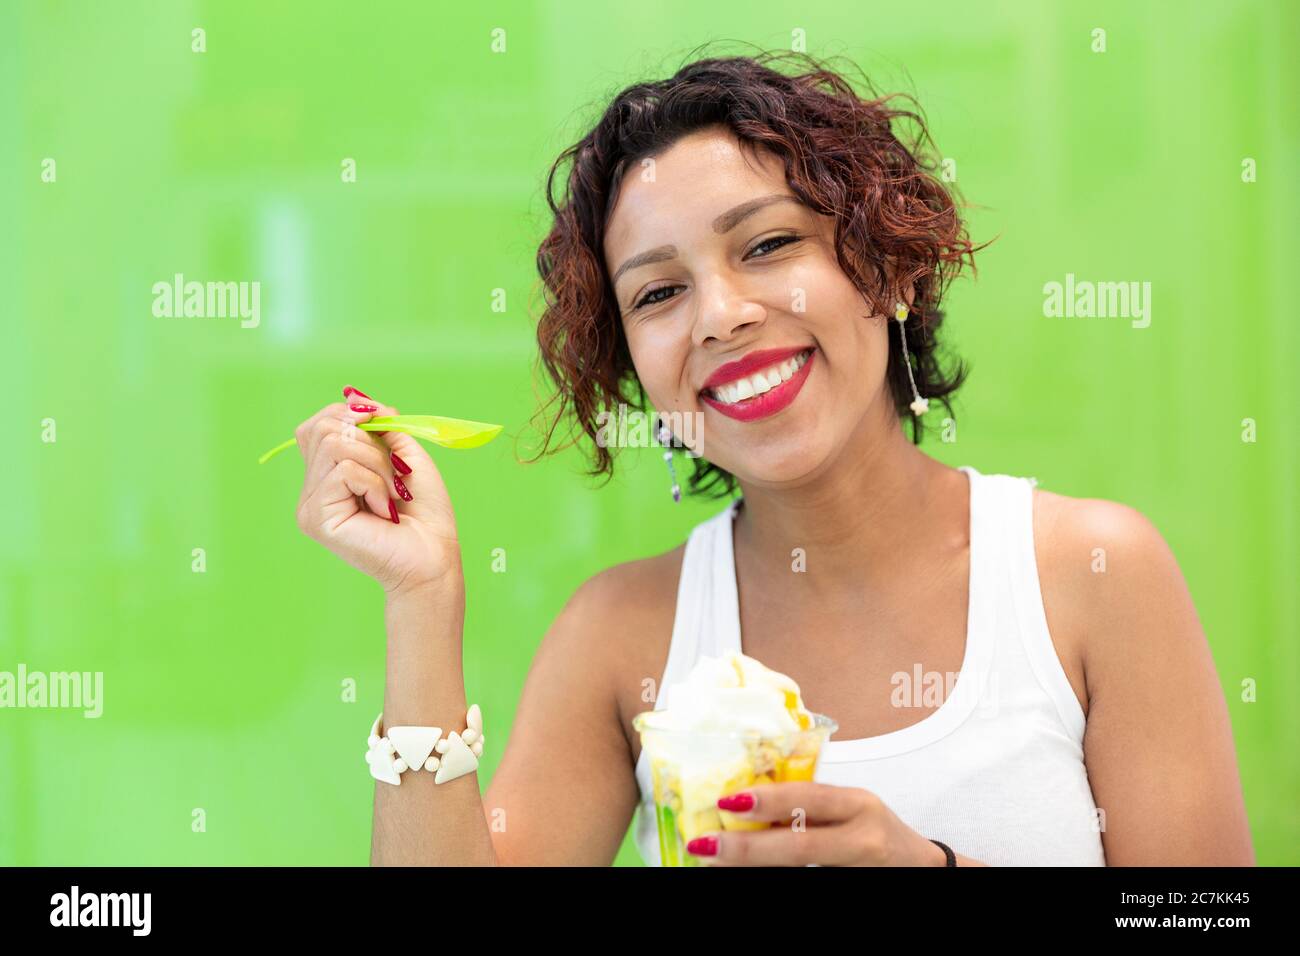 Primo piano di una donna latina sorridente che tiene un gelato su sfondo verde. Spazio per il testo. Messa a fuoco selettiva. Concetto di estate e stile di vita. Foto Stock